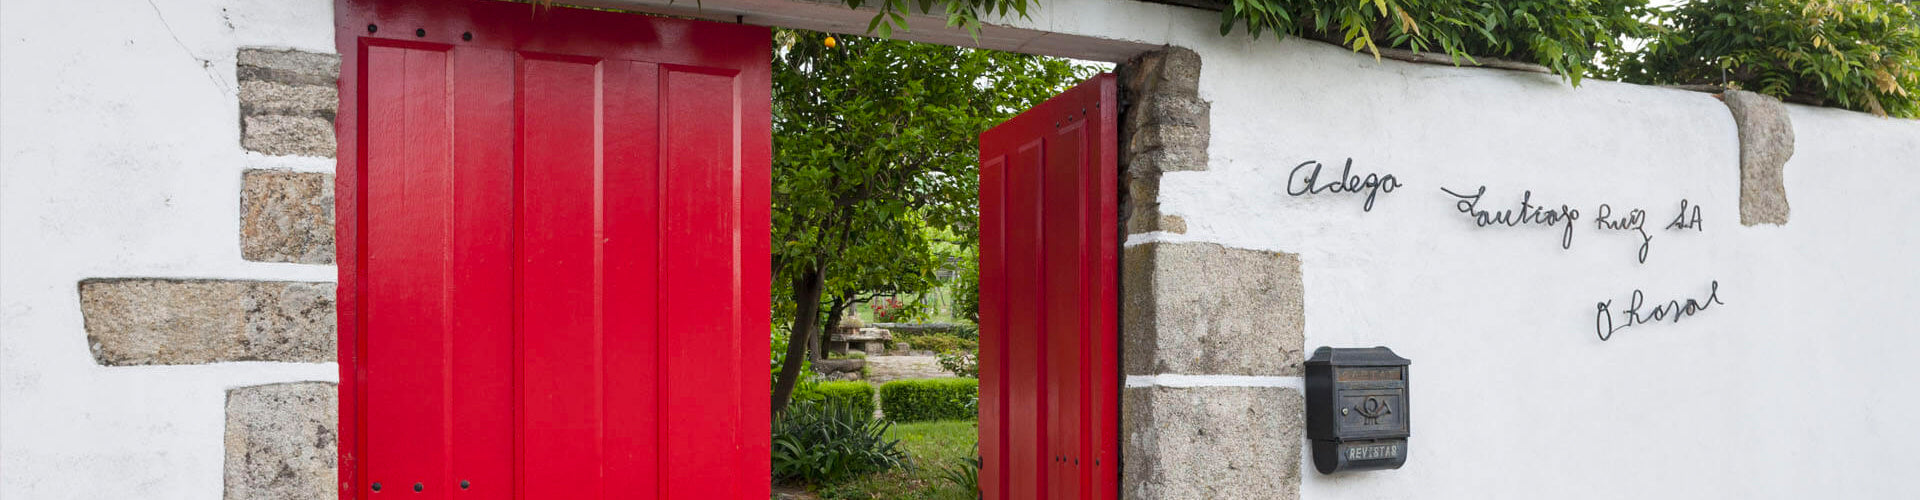 Open doorway in wall through to the Santiago Ruiz winery and gardens